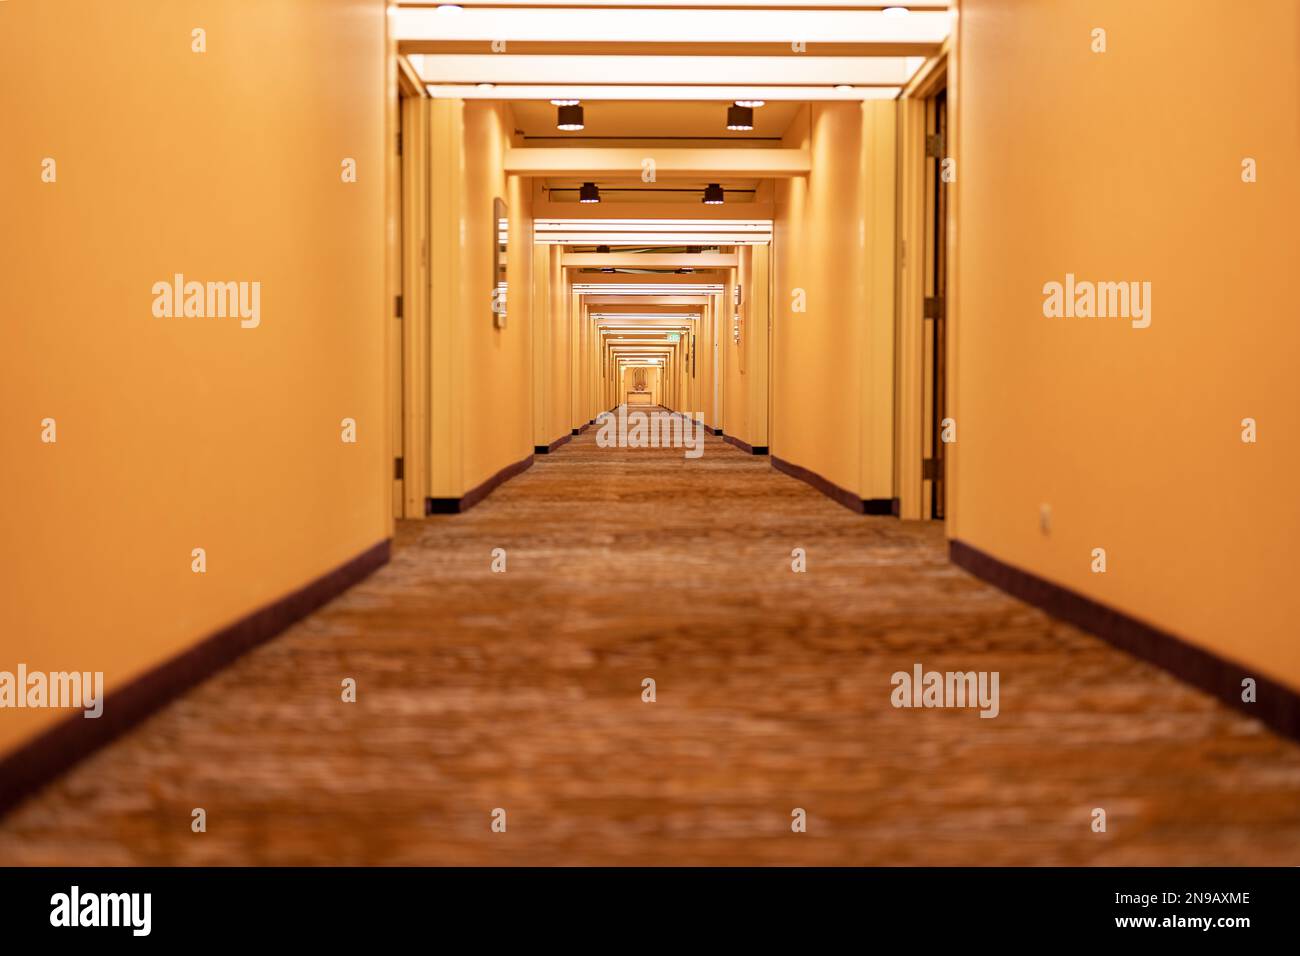 Lungo corridoio dell'hotel, corridoio, con porte, tappeti e tonalità beige giallastro. Foto Stock